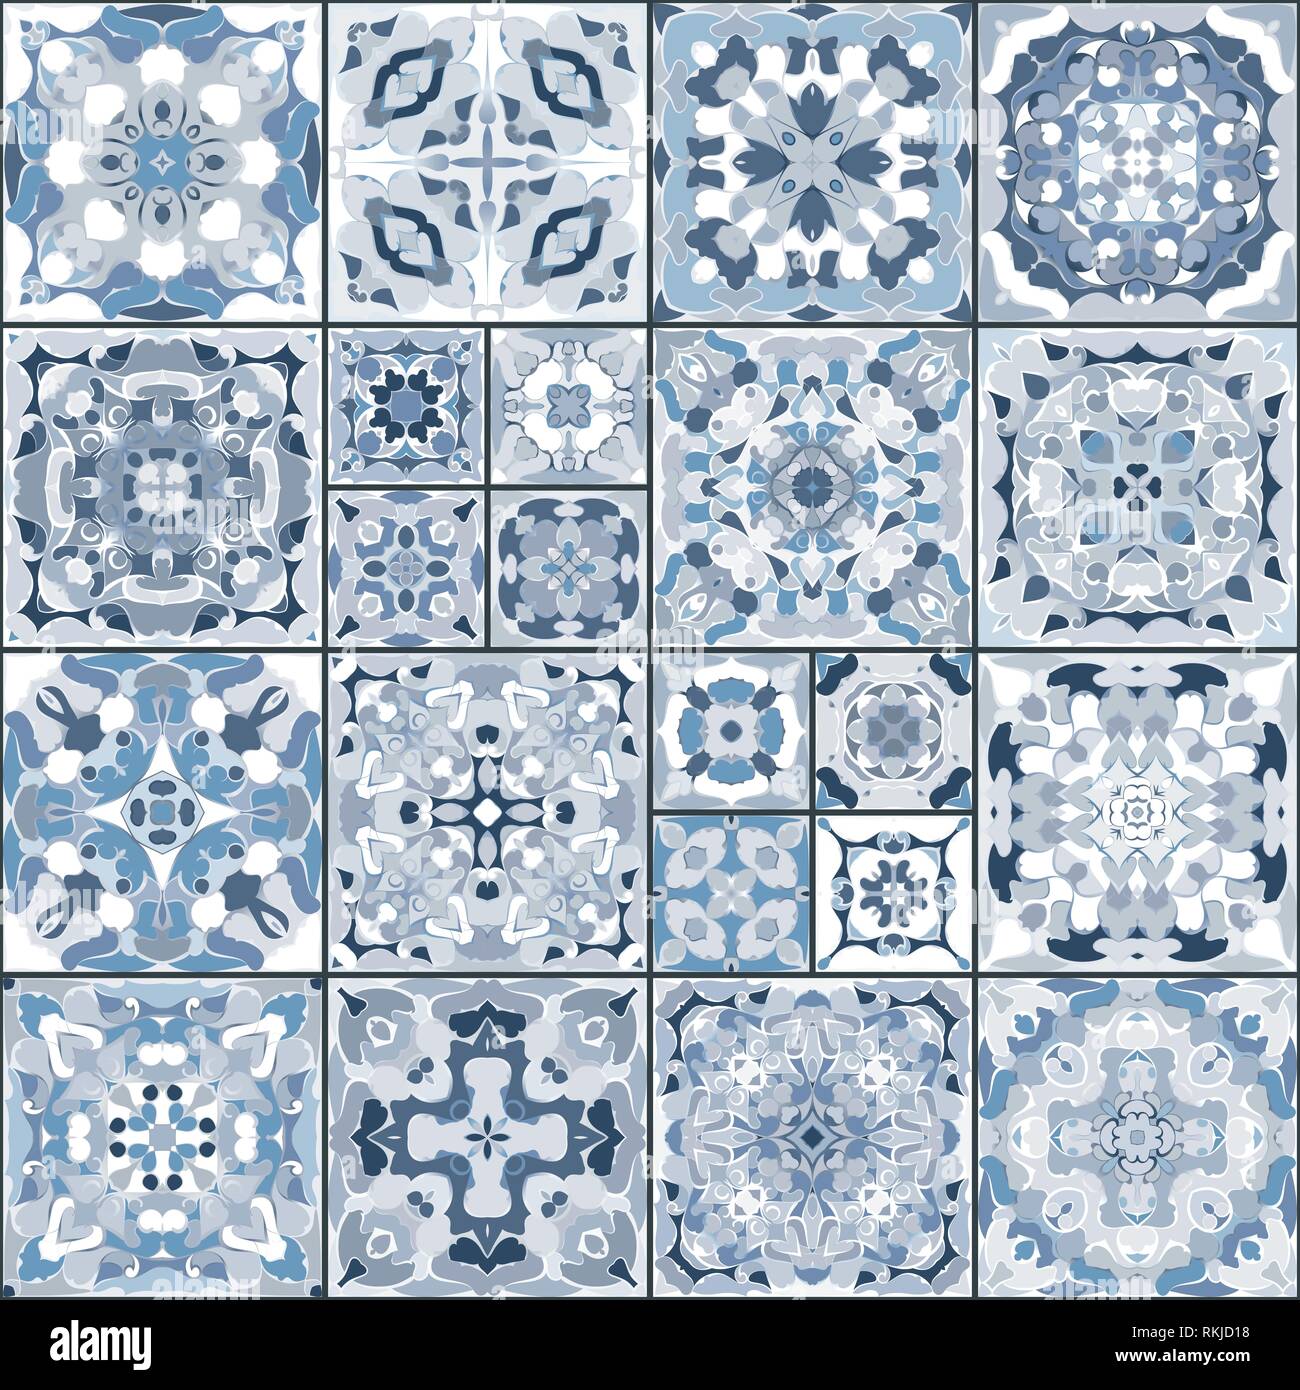 Eine Sammlung von keramischen Fliesen in Weiß und Blau. Eine Reihe von quadratischen Muster im ethnischen Stil. Vector Illustration. Stock Vektor